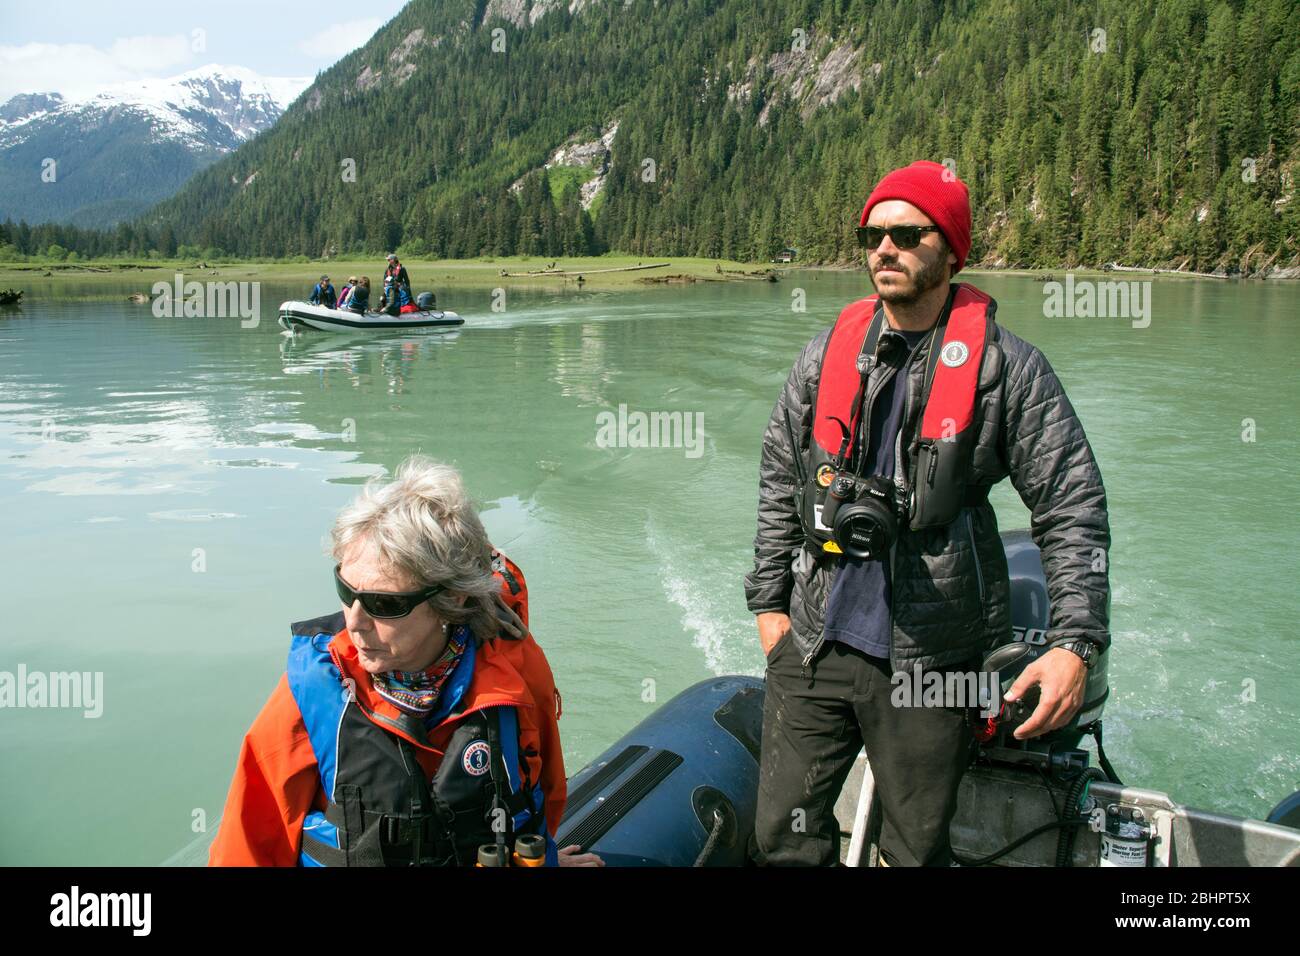 Una guida naturalistica ecoturismo che guida i turisti in barche zodiacali nell'Oceano Pacifico nella regione della foresta pluviale del Grande Orso, British Columbia, Canada. Foto Stock